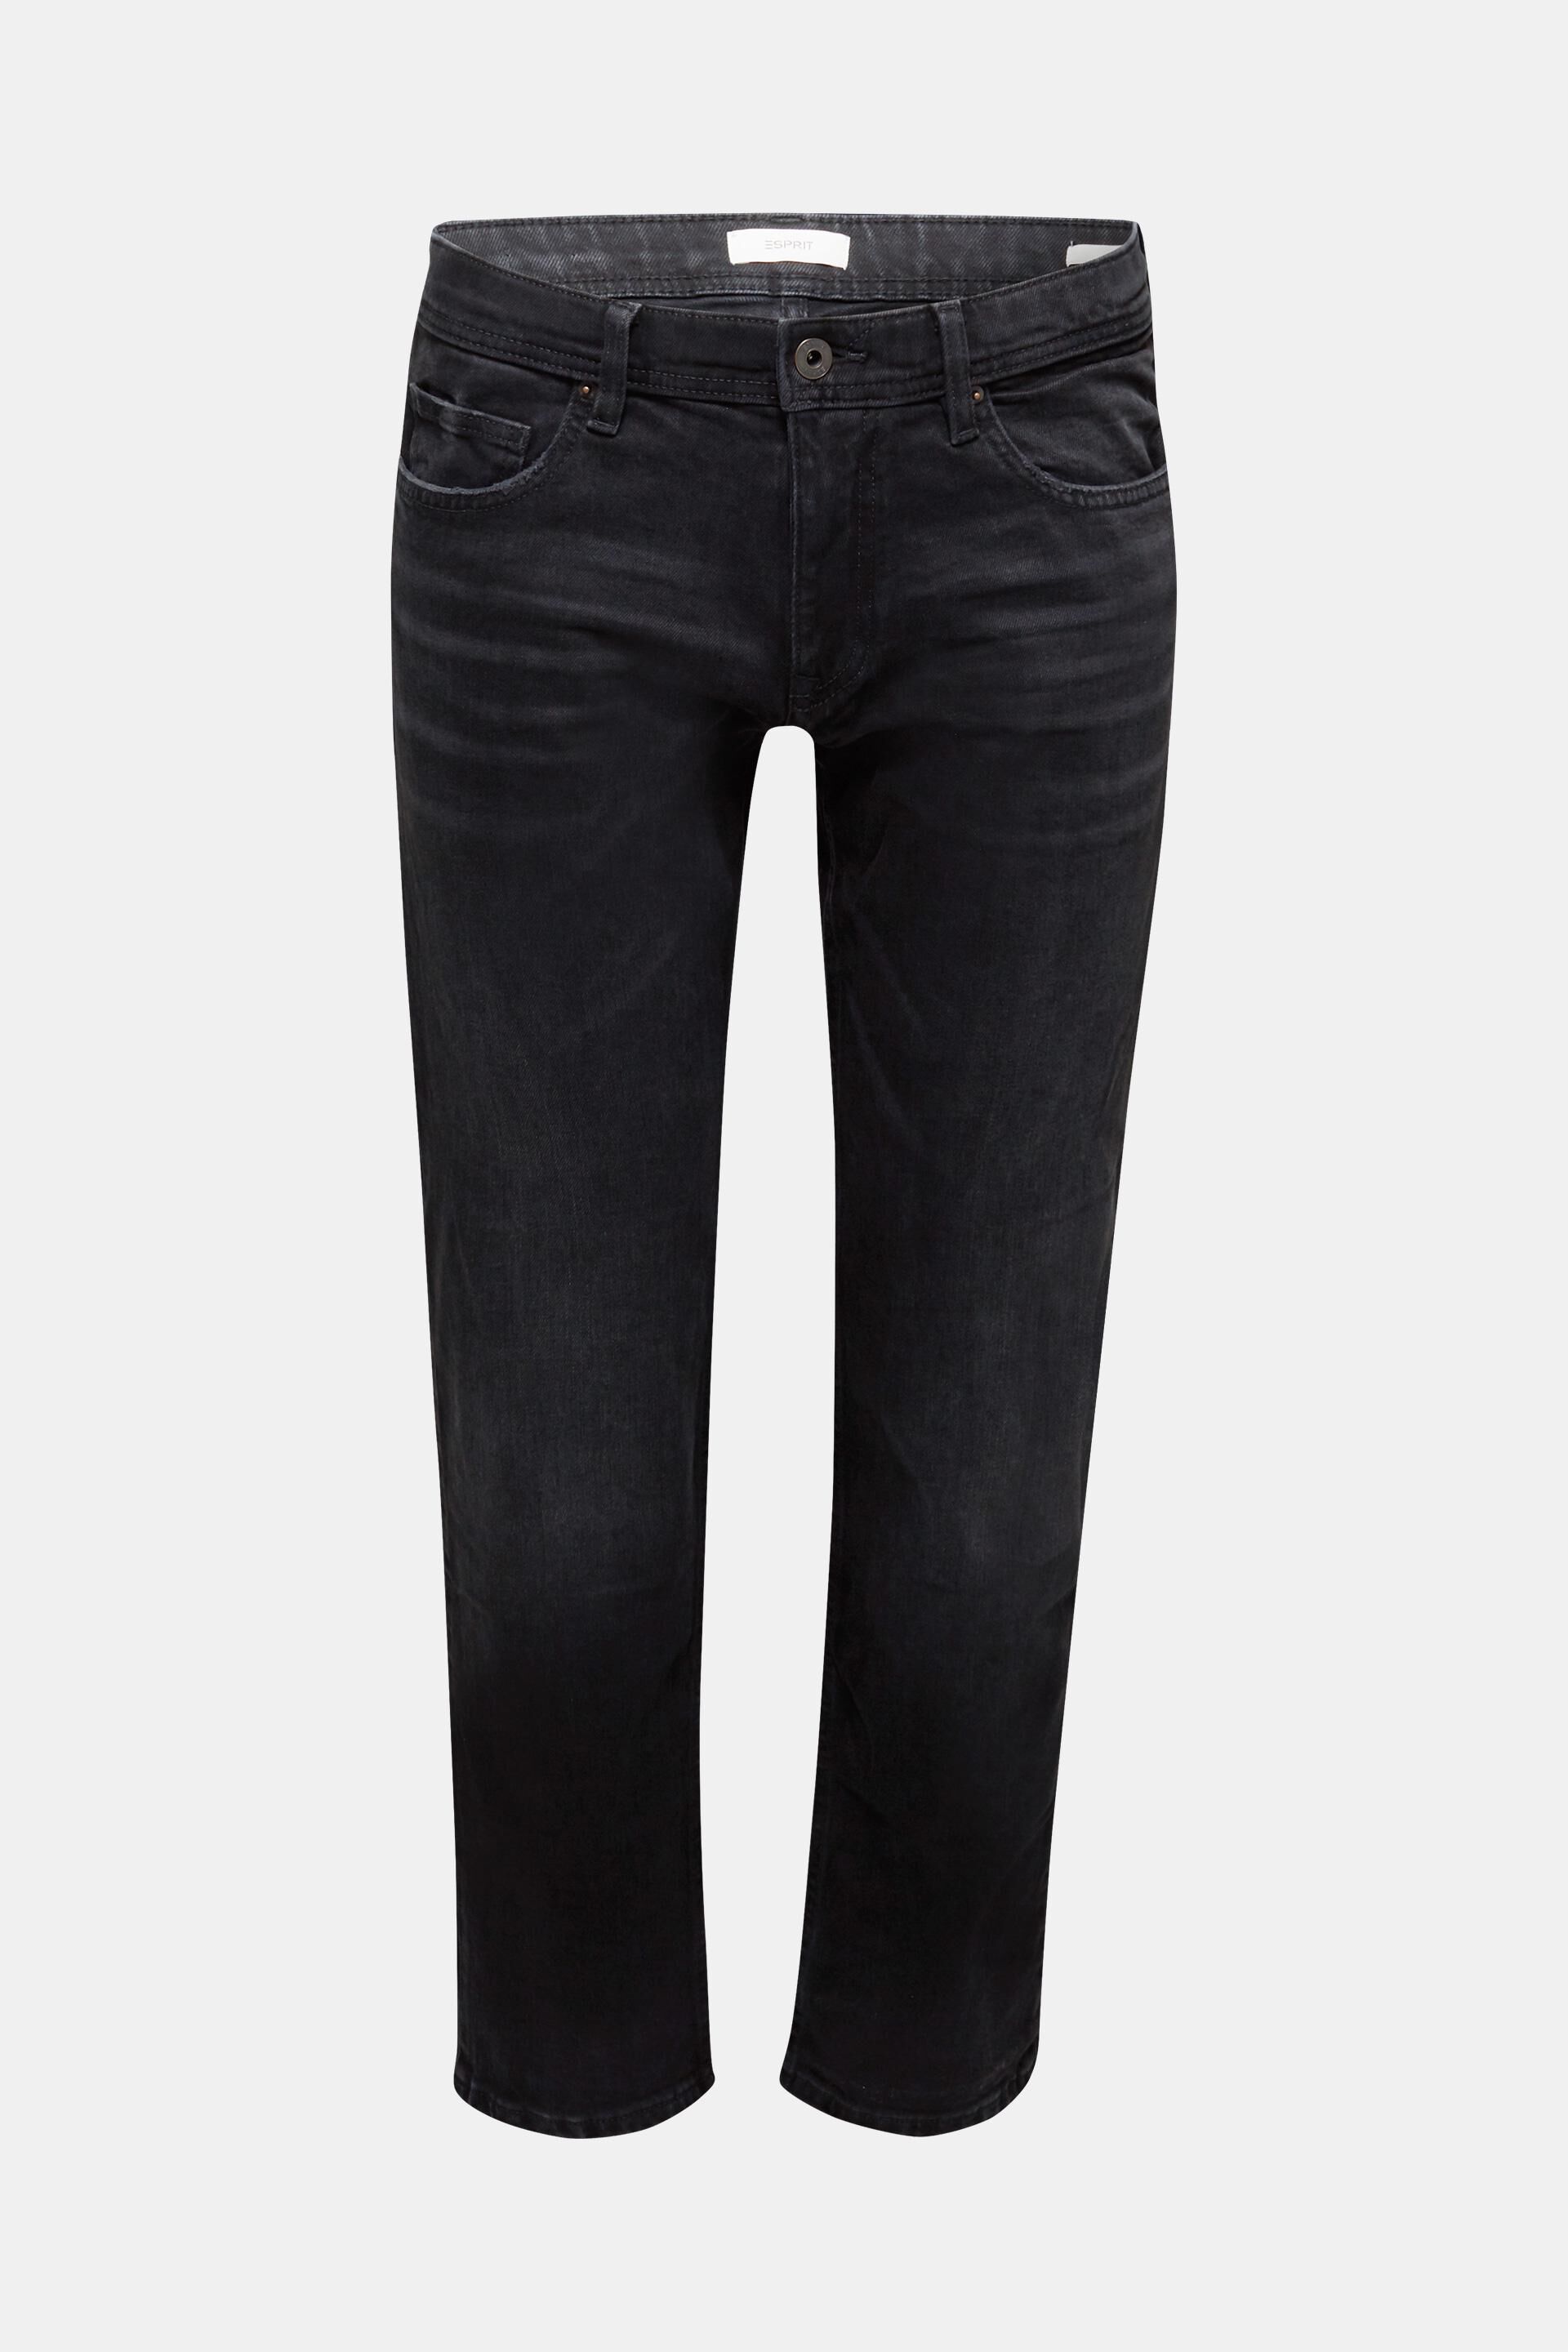 Dolce & Gabbana Baumwolle Baumwolle hemd in Schwarz für Herren Herren Bekleidung Jeans Jeans mit Gerader Passform 